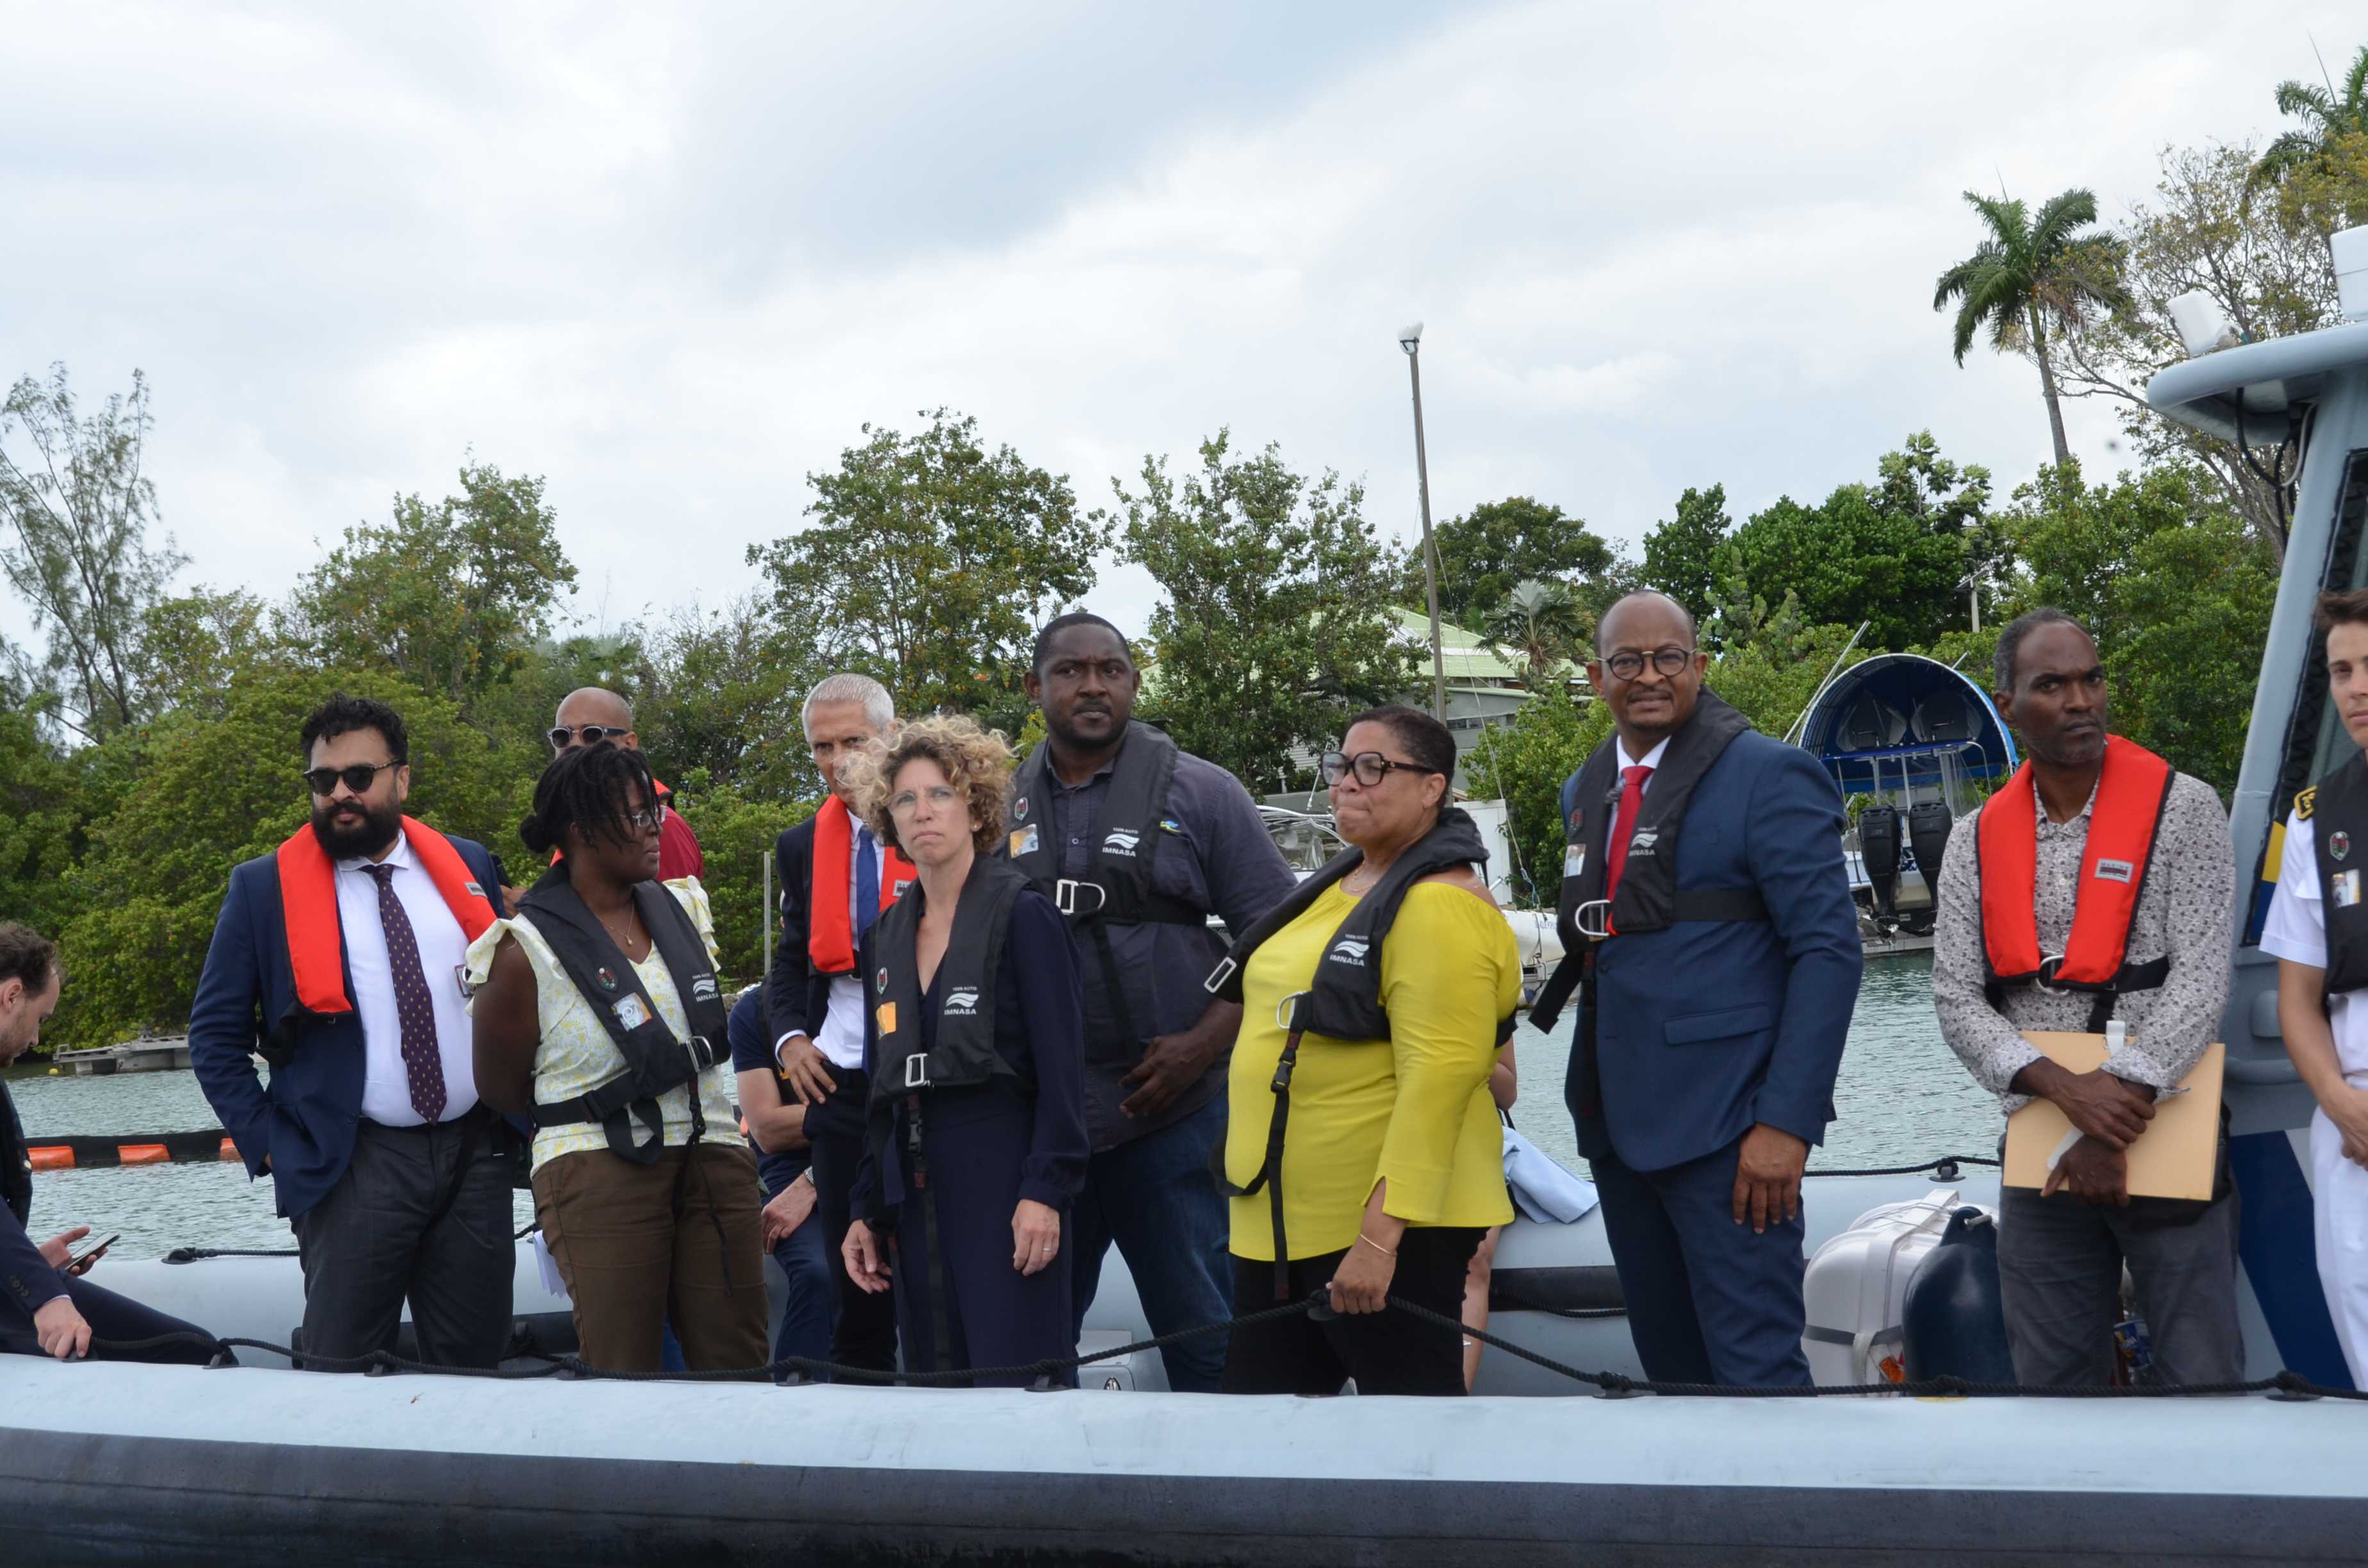     Lutte contre les sargasses en Guadeloupe : l’Etat signe deux conventions avec Petit-Bourg et Goyave

